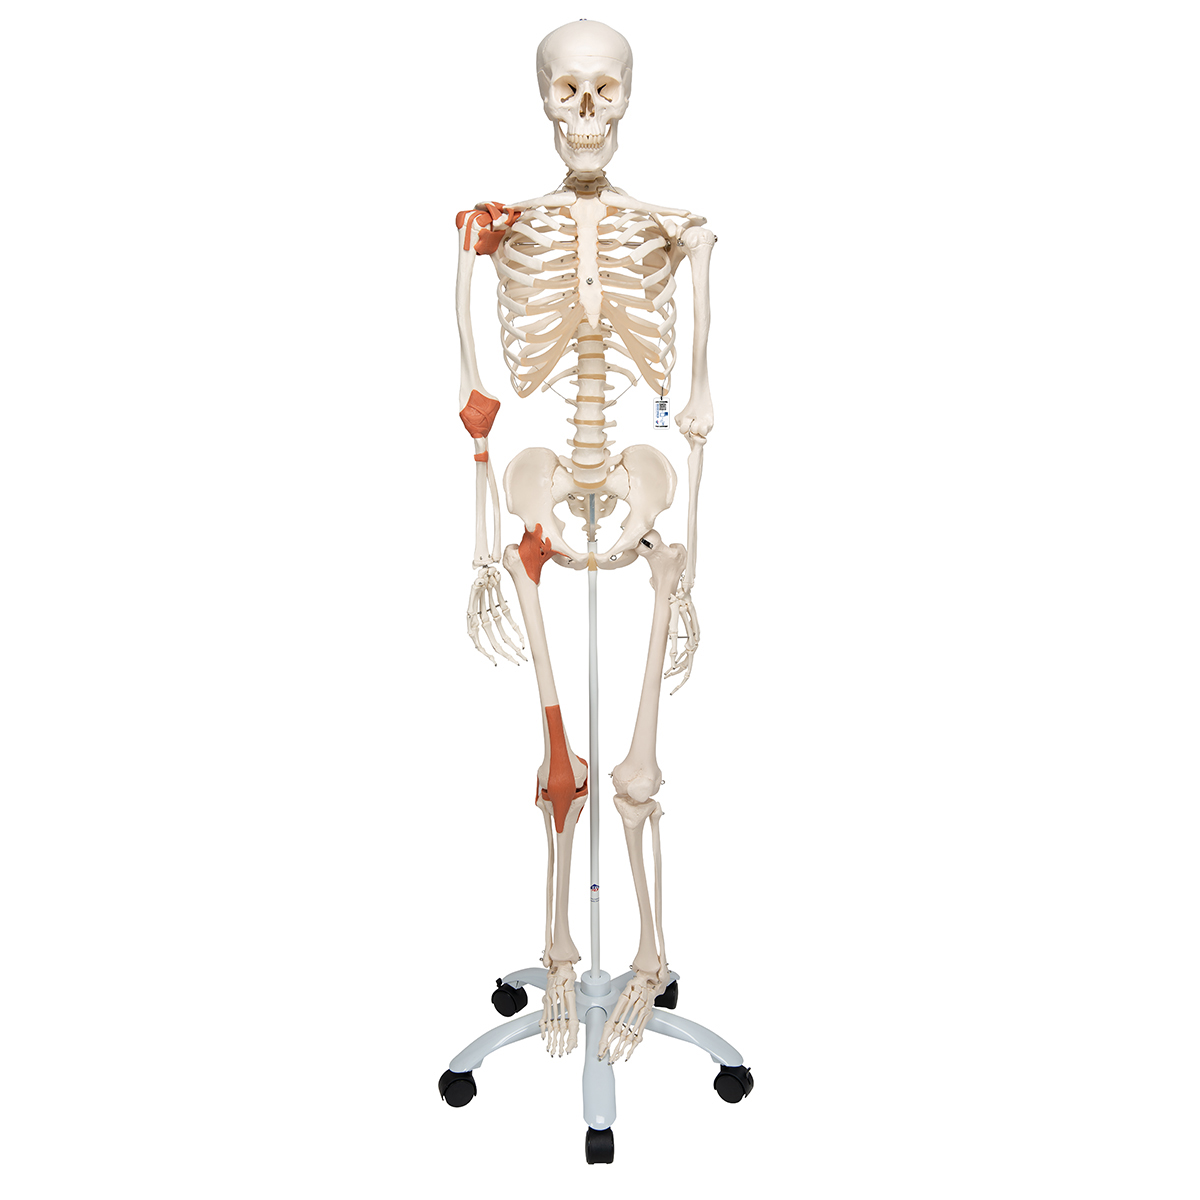 Menschliches Skelett Modell "Leo", lebensgroß mit Gelenkbändern, auf Metallstativ mit Rollen - 3B Smart Anatomy, Bestellnummer 1020175, A12, 3B Scientific